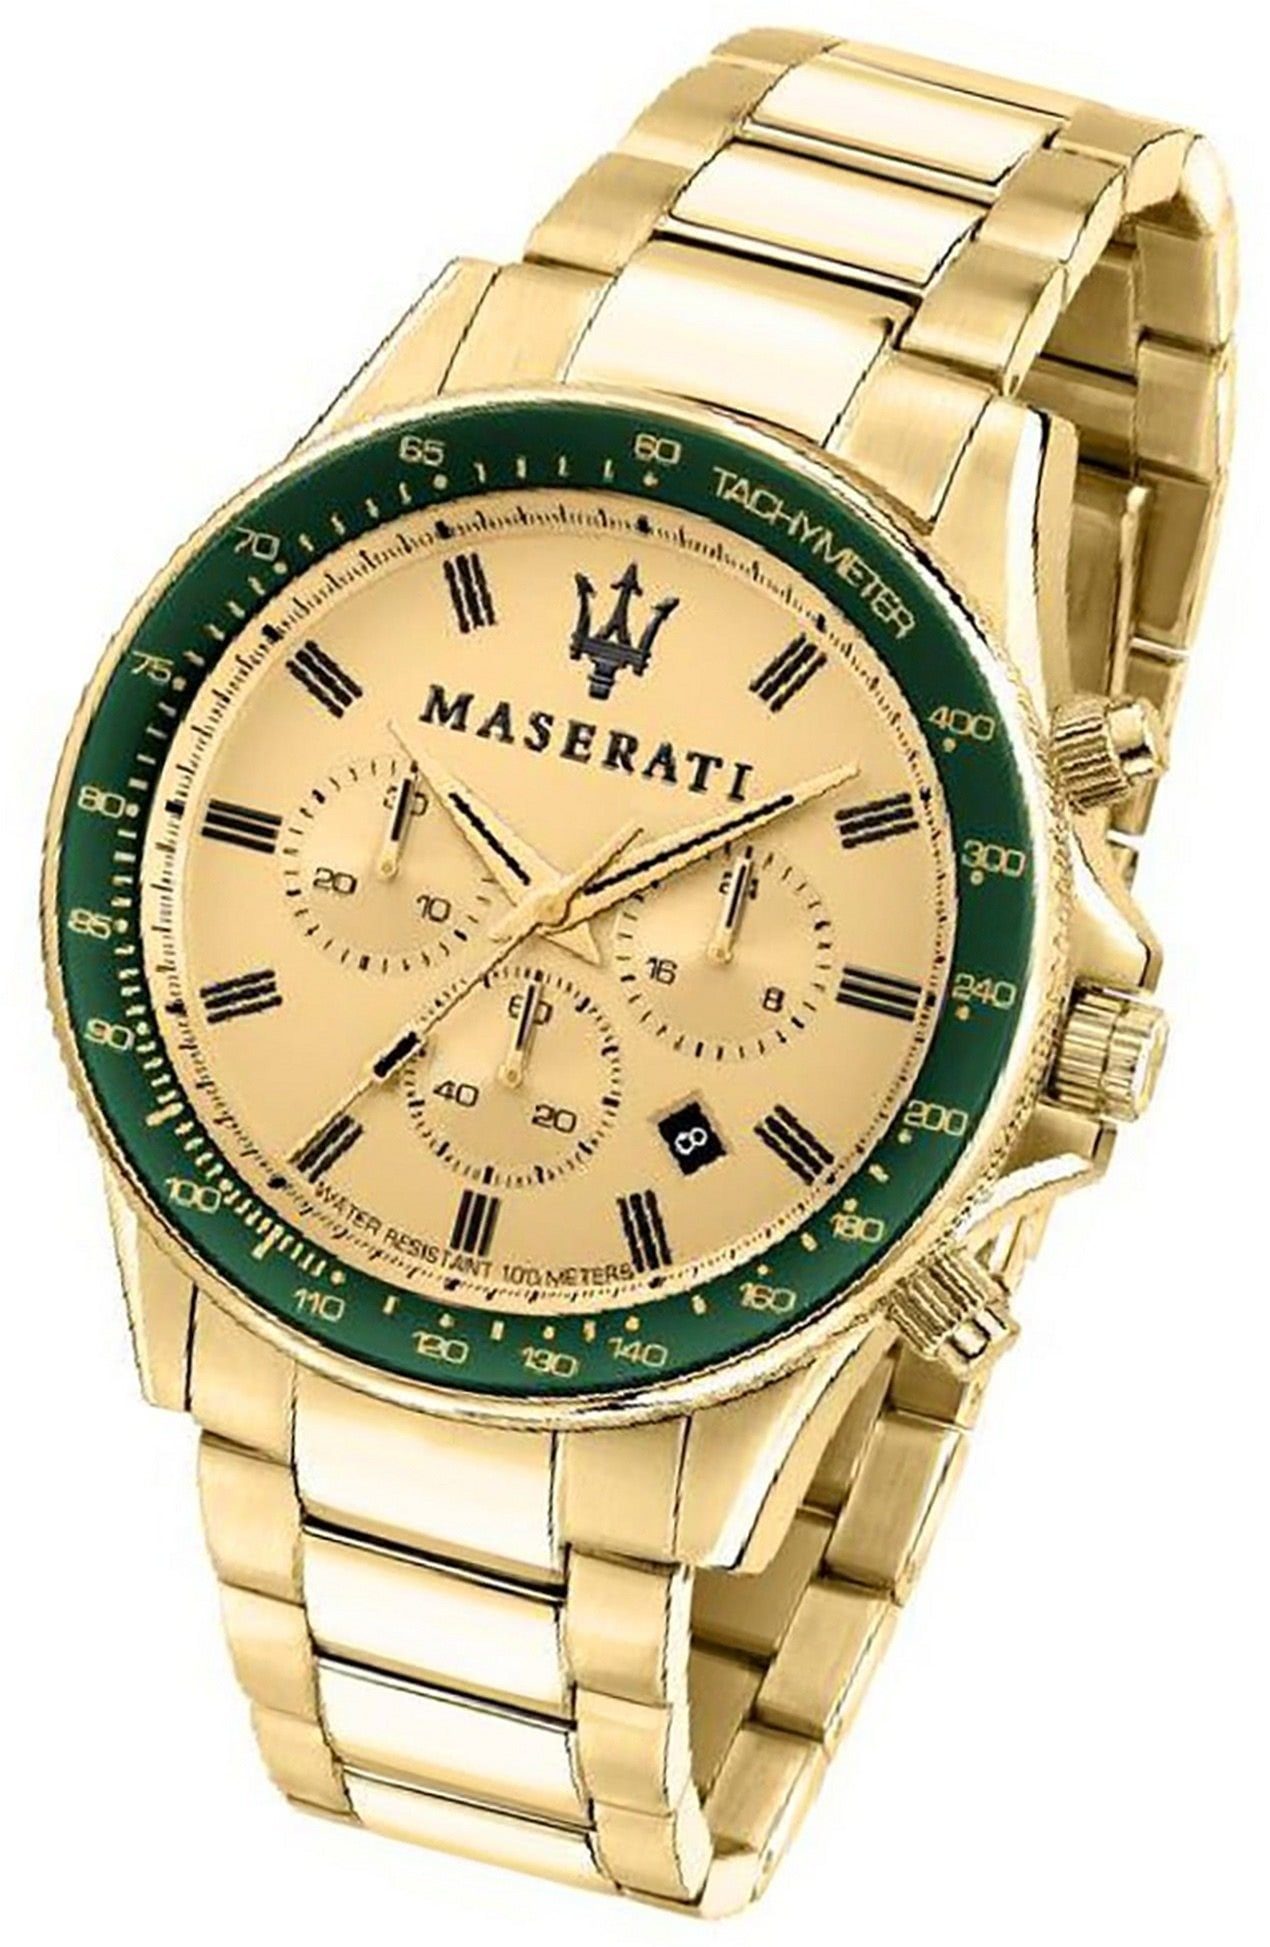 MASERATI Chronograph Maserati Edelstahl Armband-Uhr, Herrenuhr Edelstahlarmband, rundes Gehäuse, groß (ca. 44mm) gelbgold